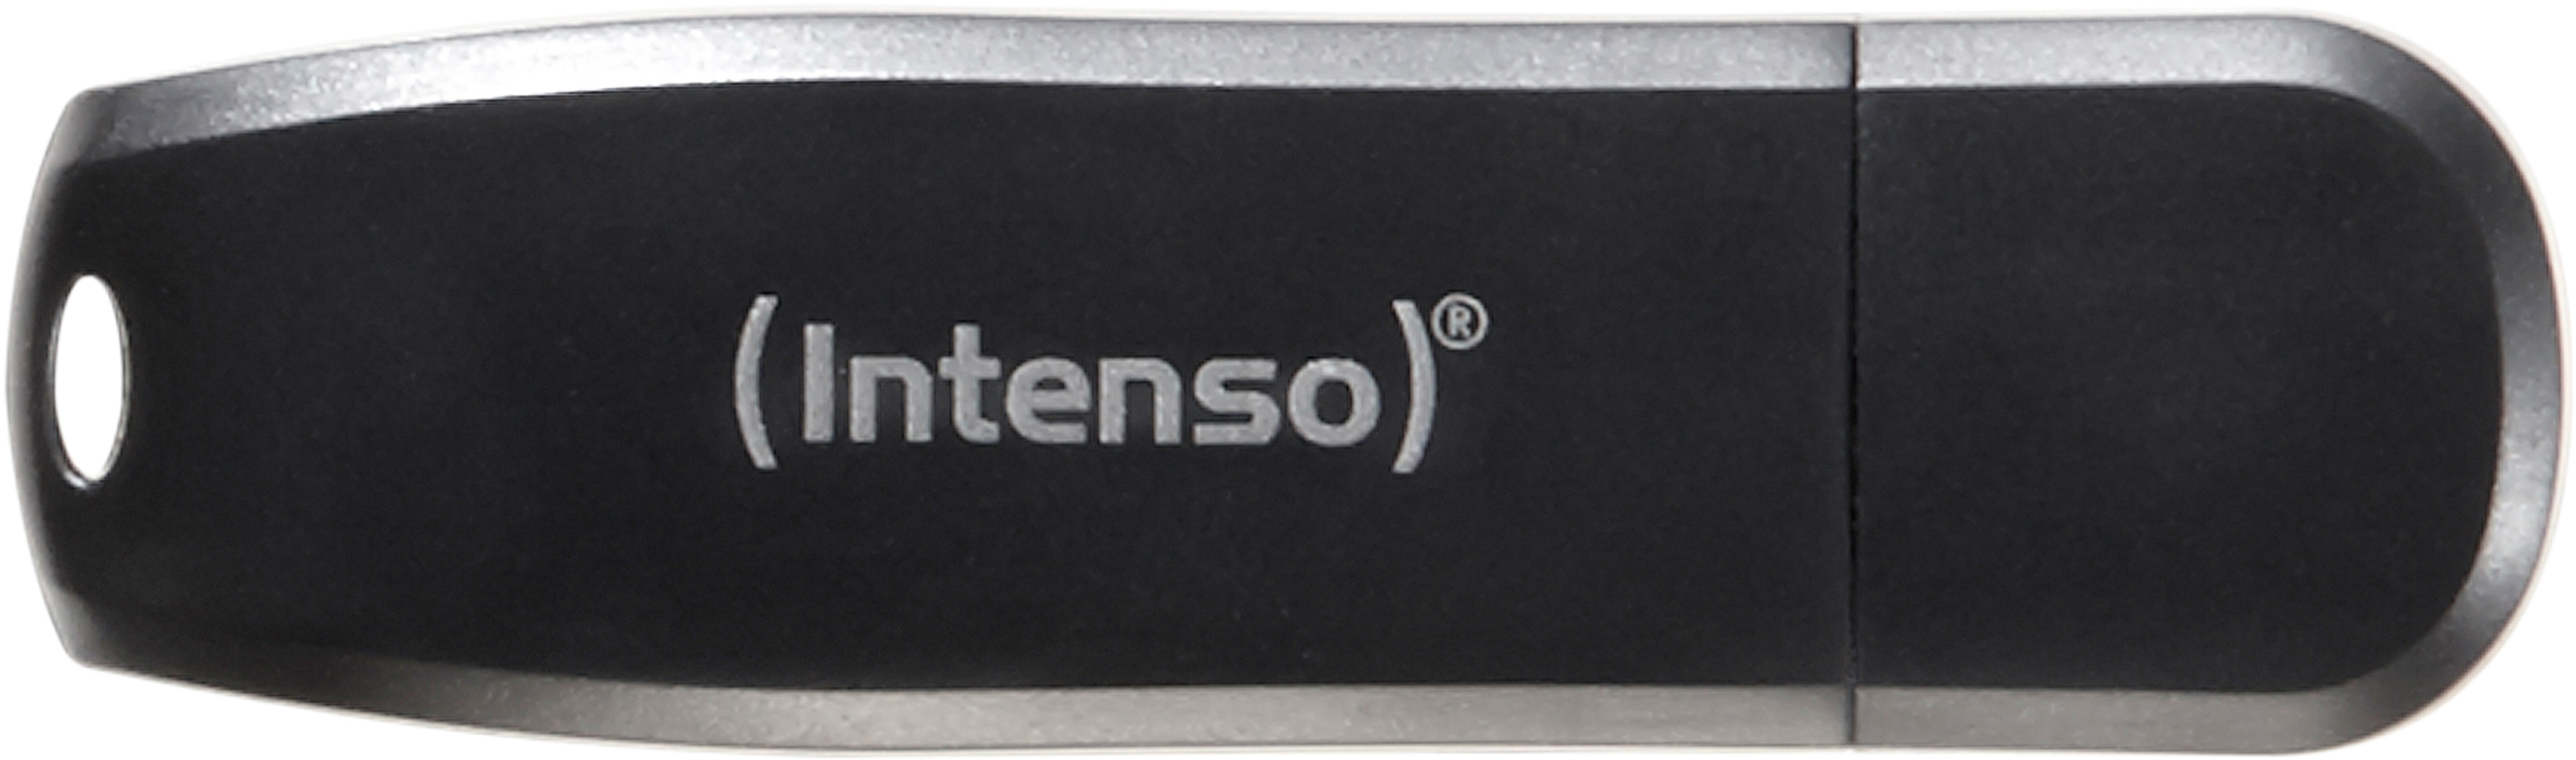 INTENSO Speed Line GB, Schwarz 35 16 MB/s, USB-Stick